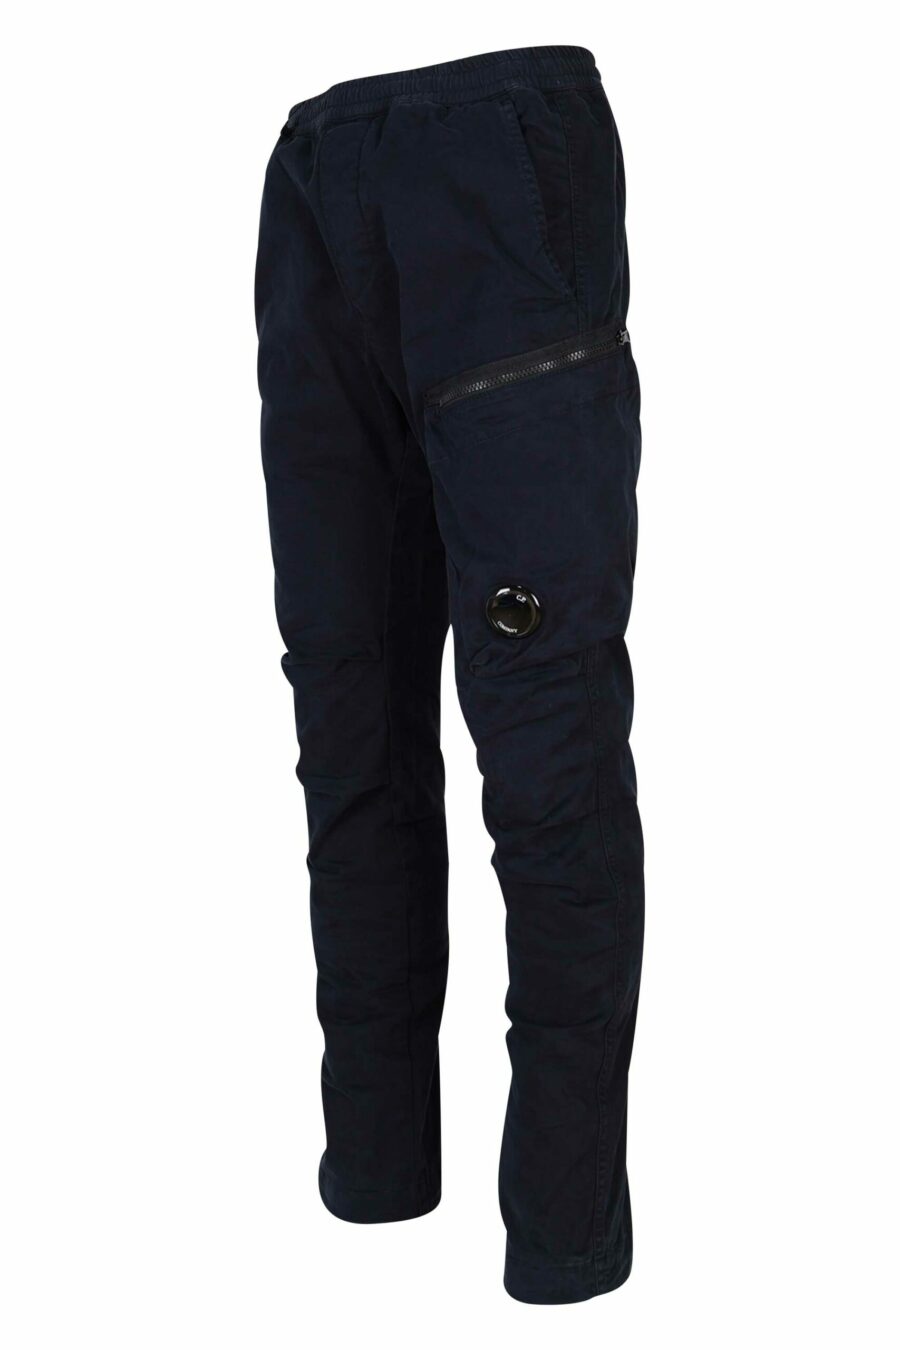 Pantalón azul oscuro de satén elástico con bolsillo lateral y logo lente - 7620943578485 1 1 scaled